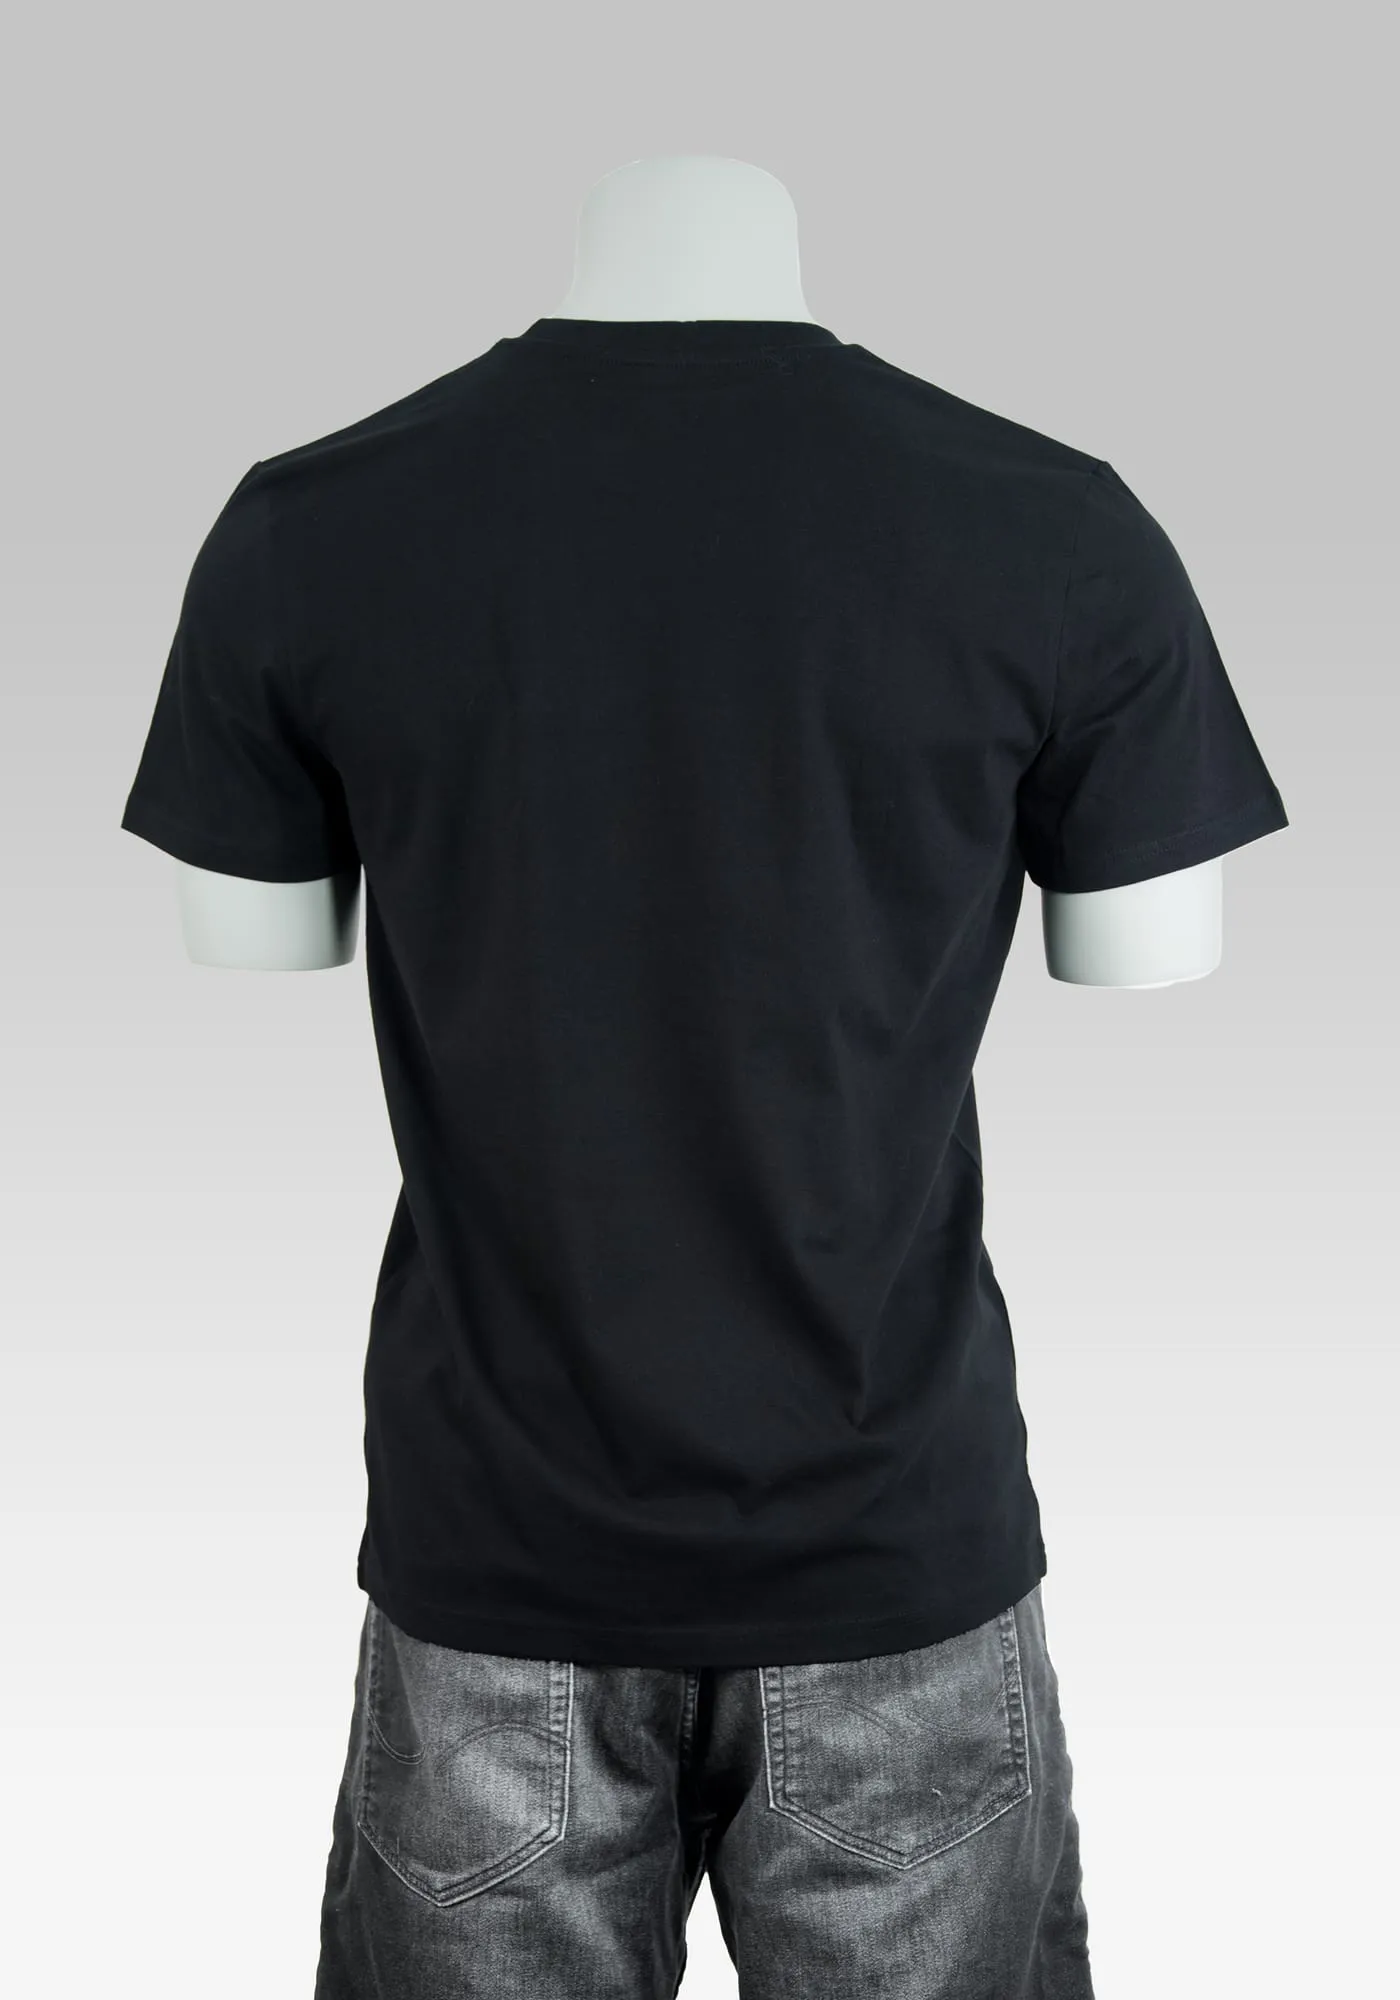 Schwarzes T-Shirt Gimme in Rückenansicht auf Hollowpuppe